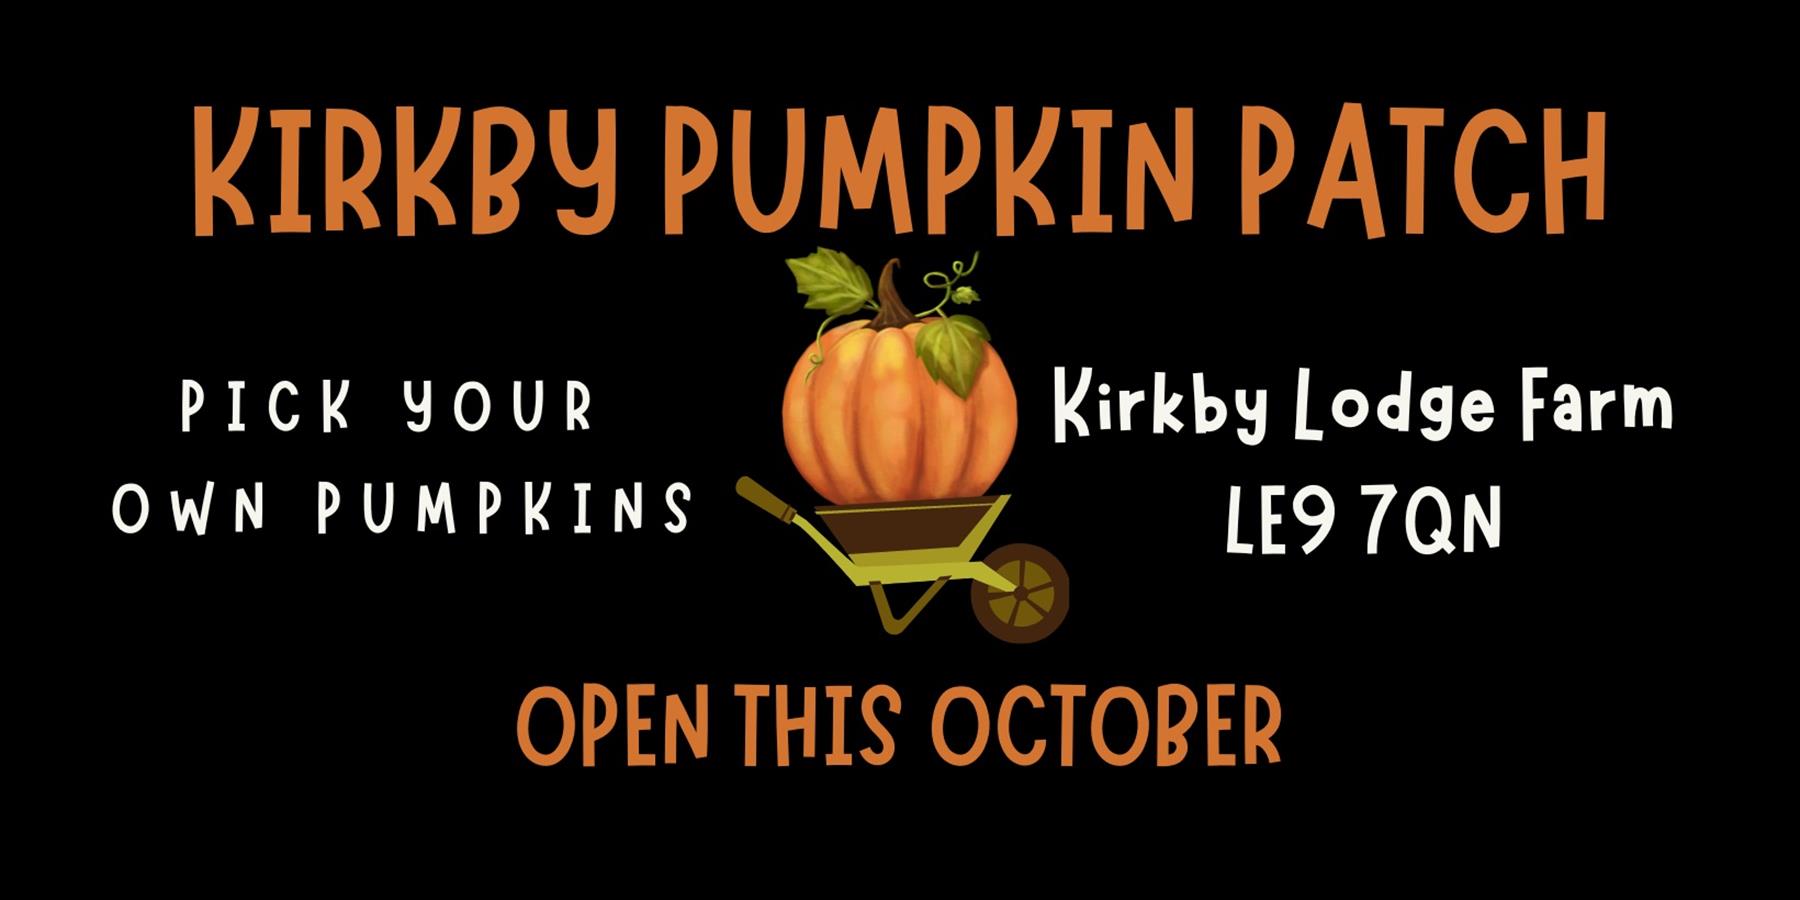 kirkby Pumpkin Patch poster